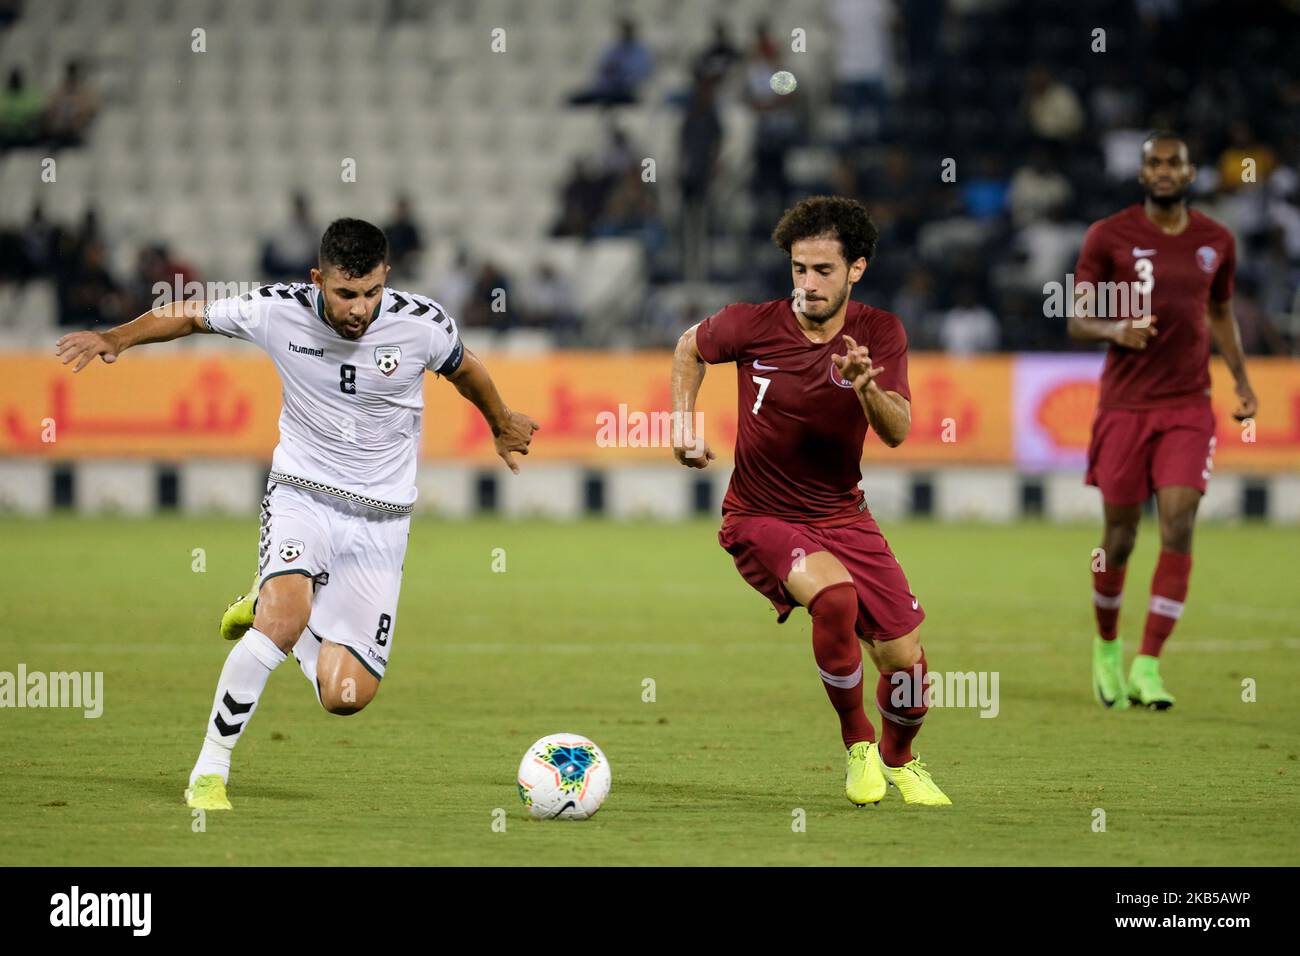 File:Esteghlal FC vs Sepahan FC, 12 August 2022 - 18.jpg - Wikimedia Commons